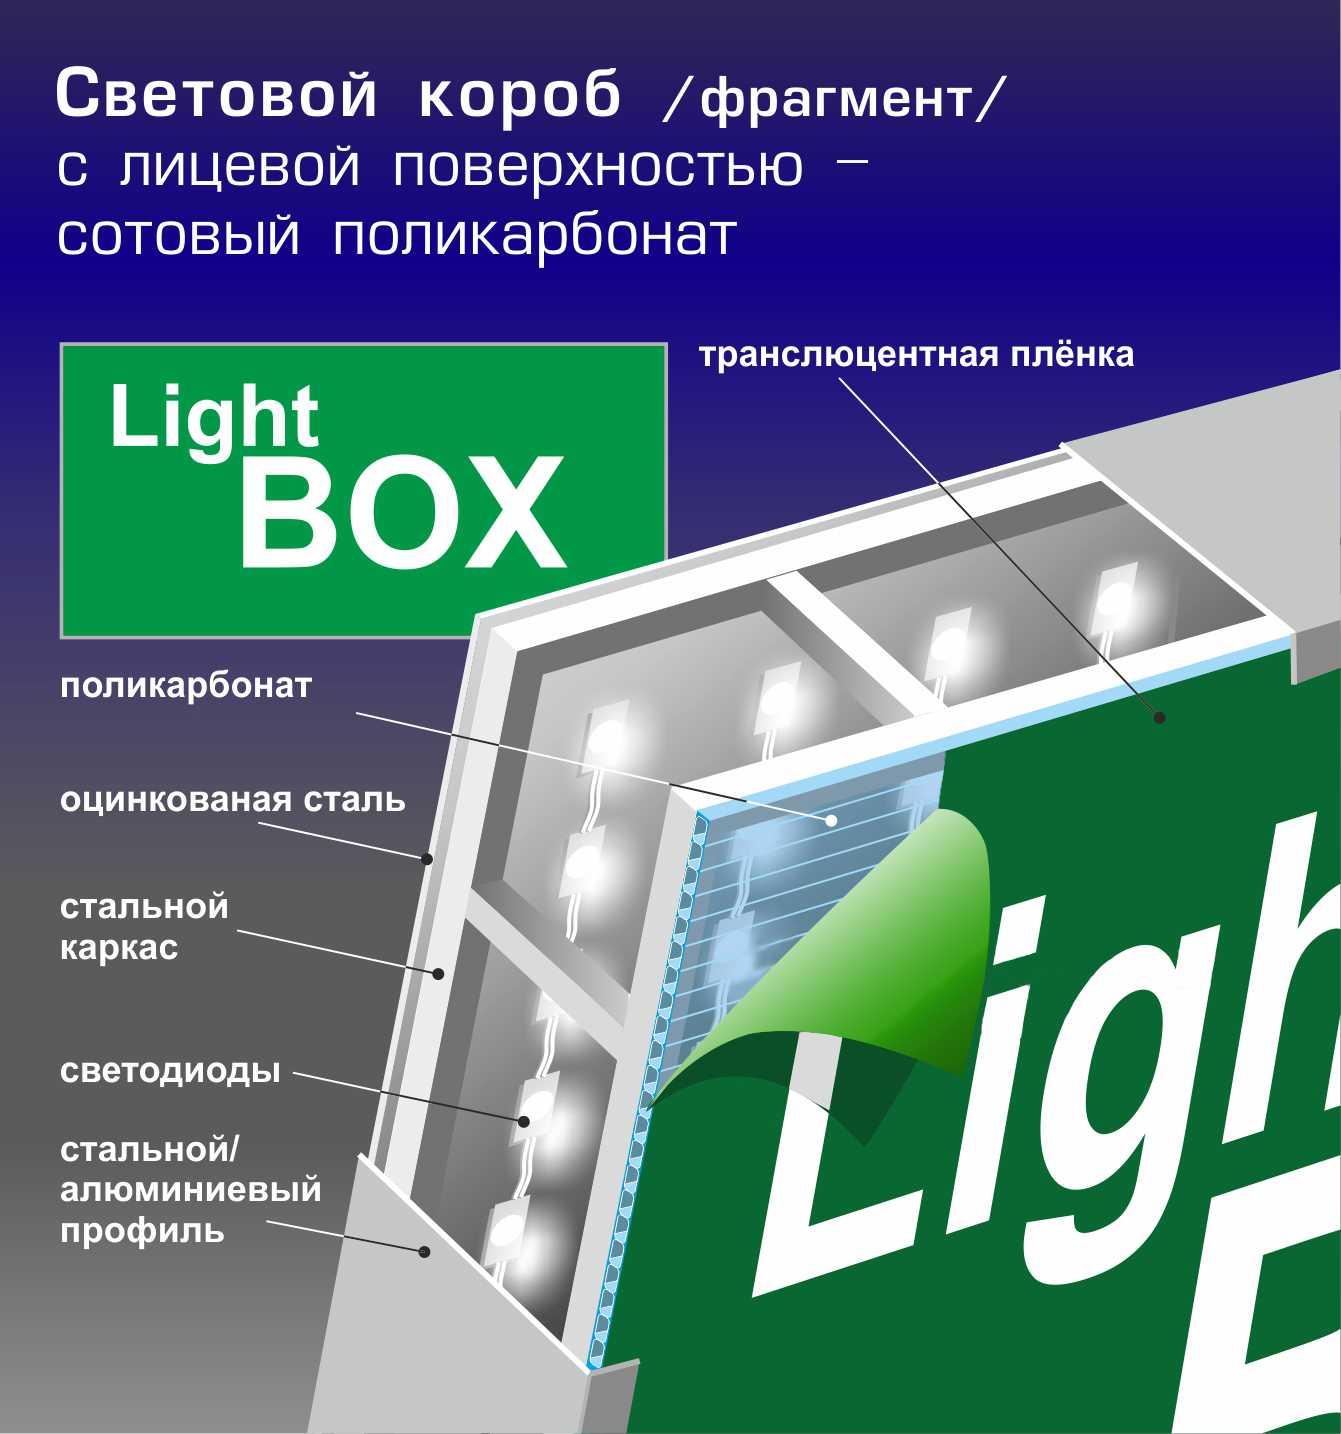 Лайтбокс своими руками. как самостоятельно сделать световой короб, используя подручные средстваинформационный строительный сайт |